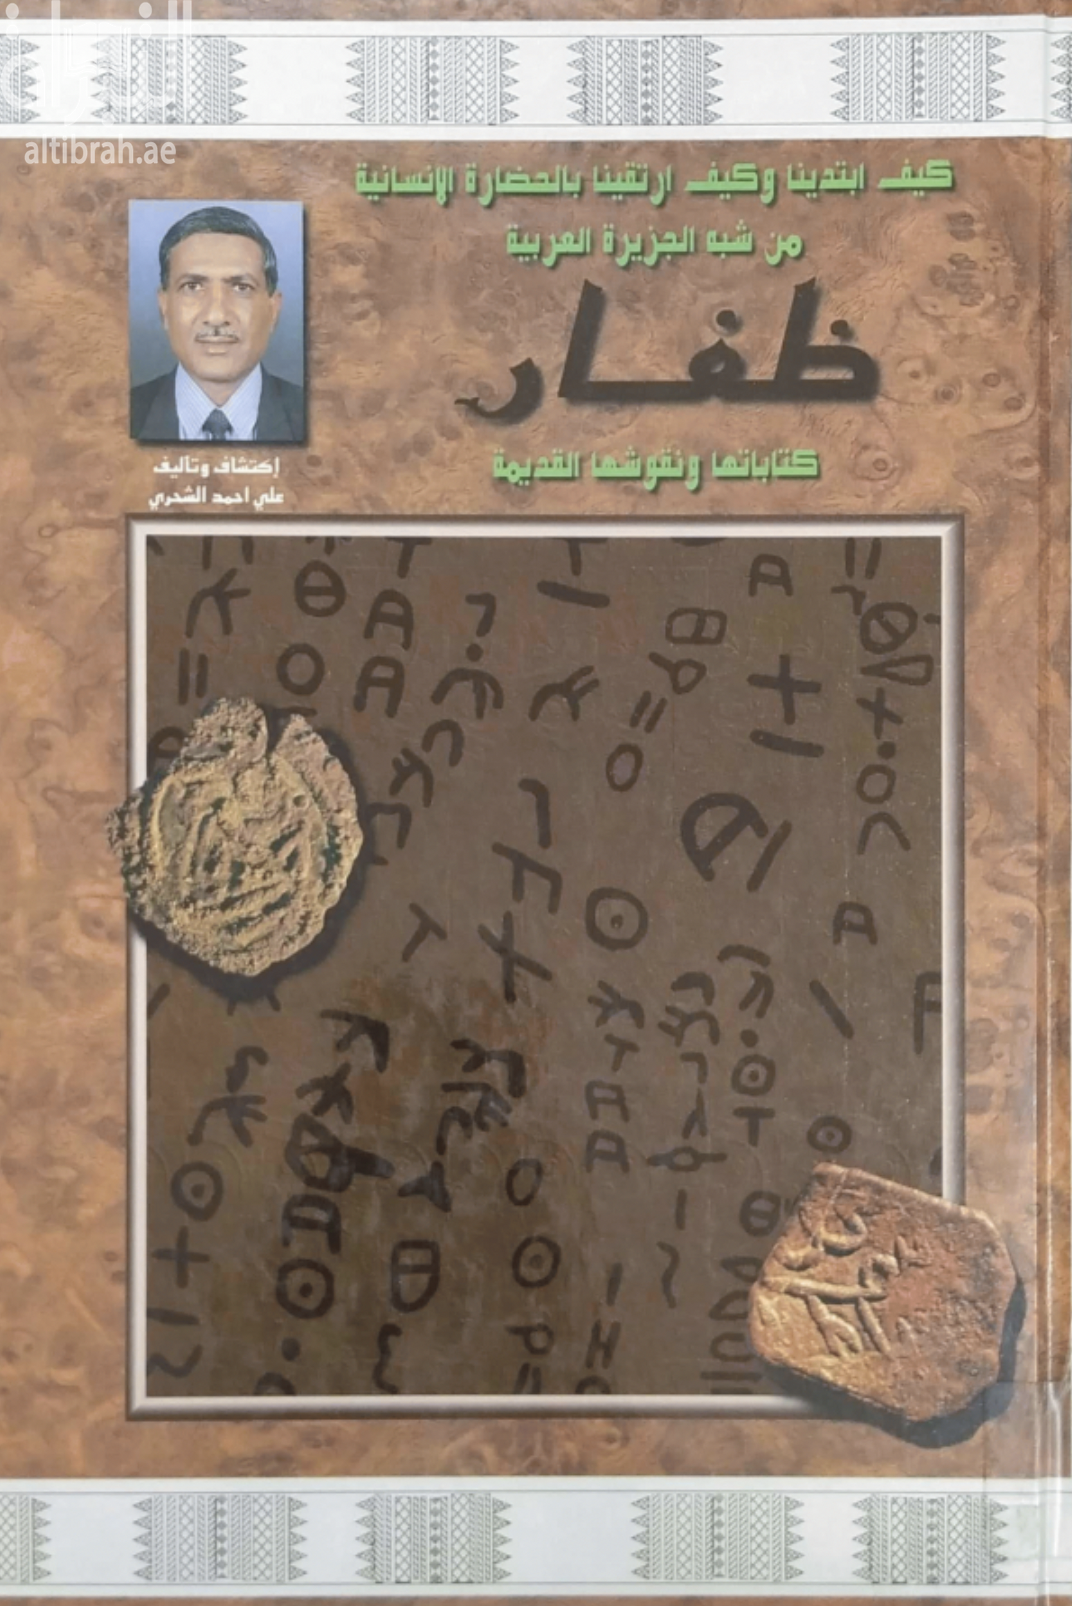 كيف ابتدينا وكيف ارتقينا بالحضارة الإنسانية من شبه الجزيرة العربية : ظفار كتاباتها ونقوشها القديمة